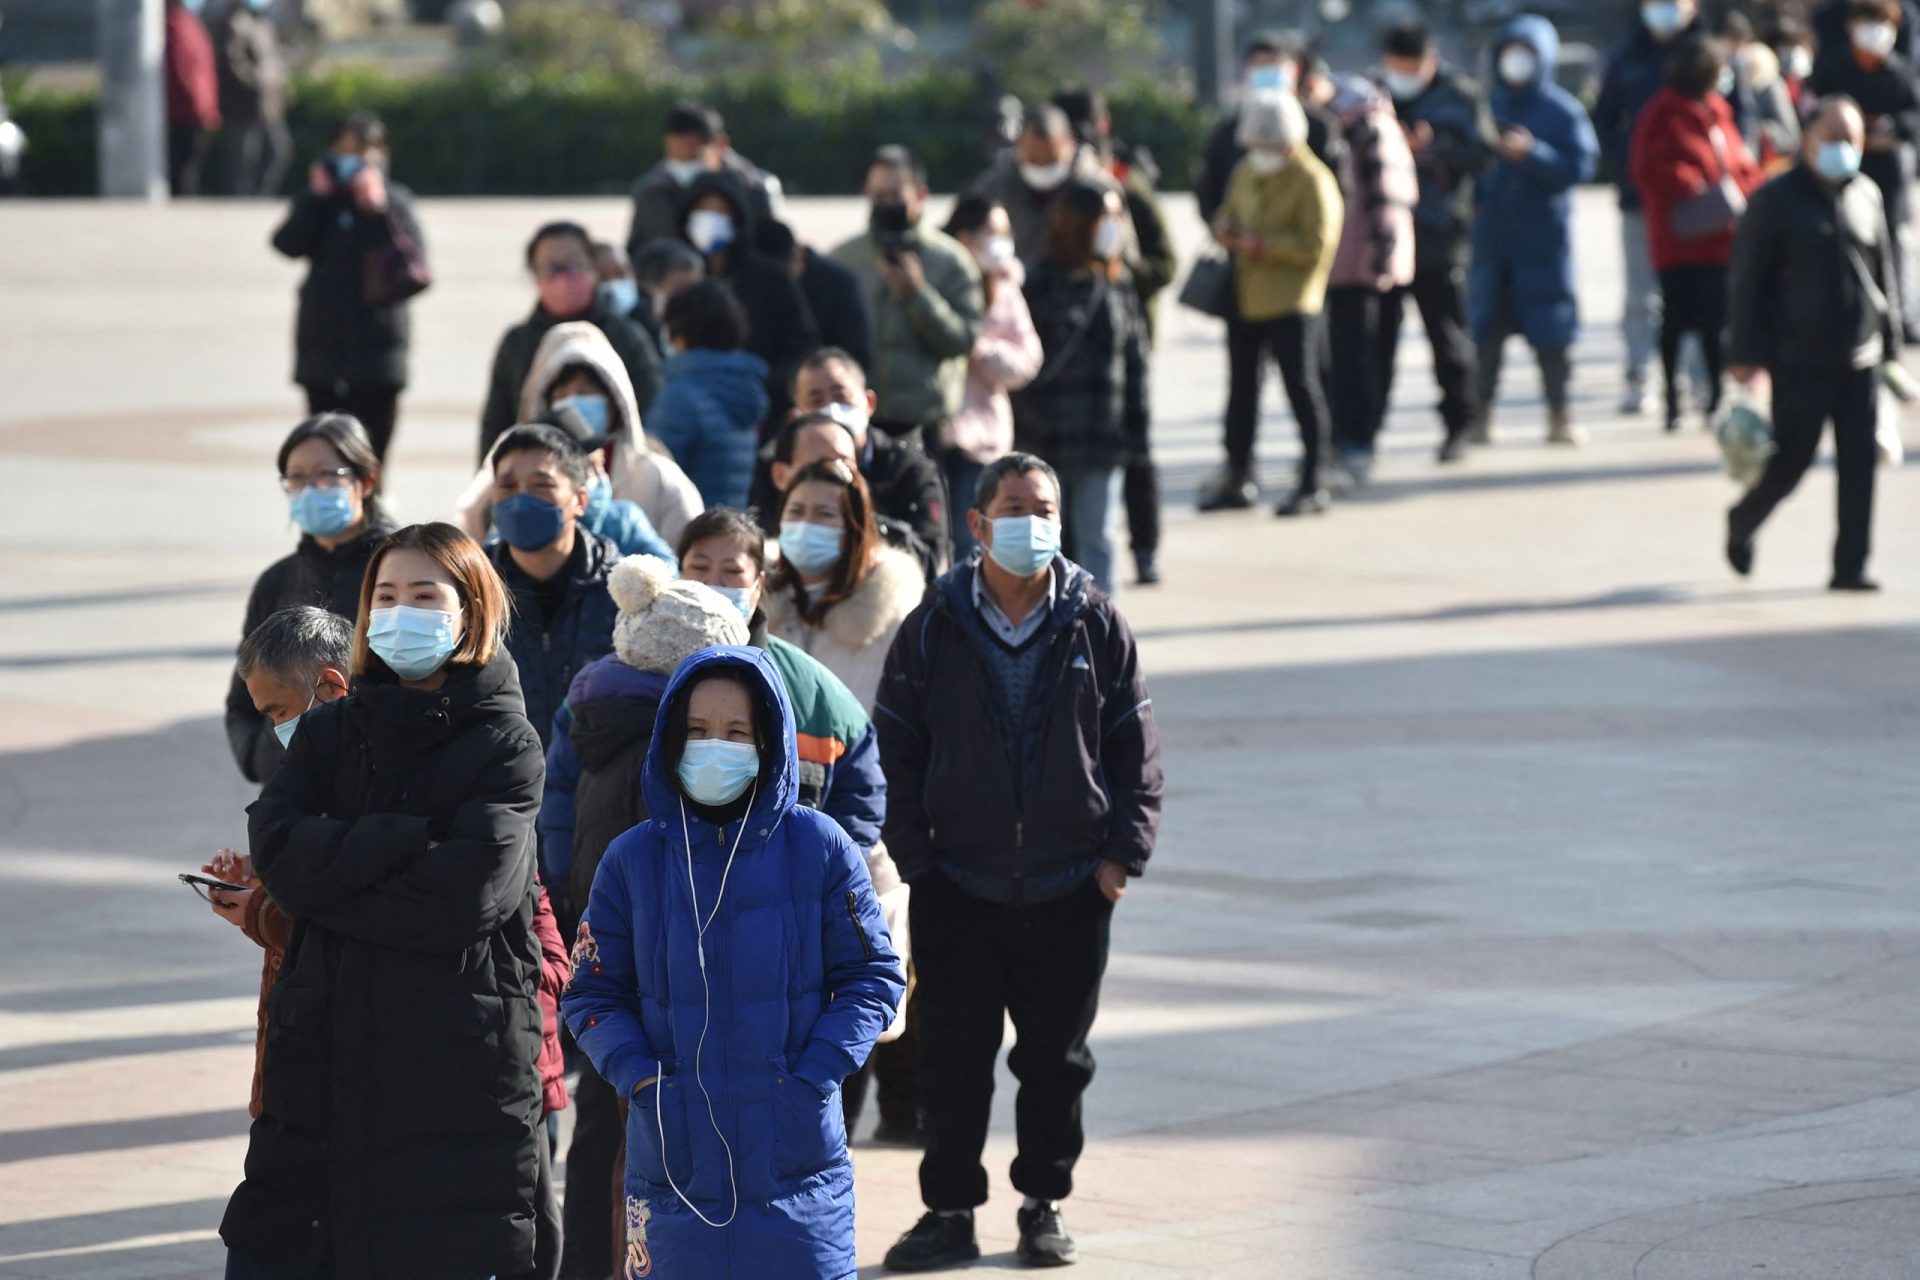 O que permanece e o que muda na luta chinesa contra epidemia